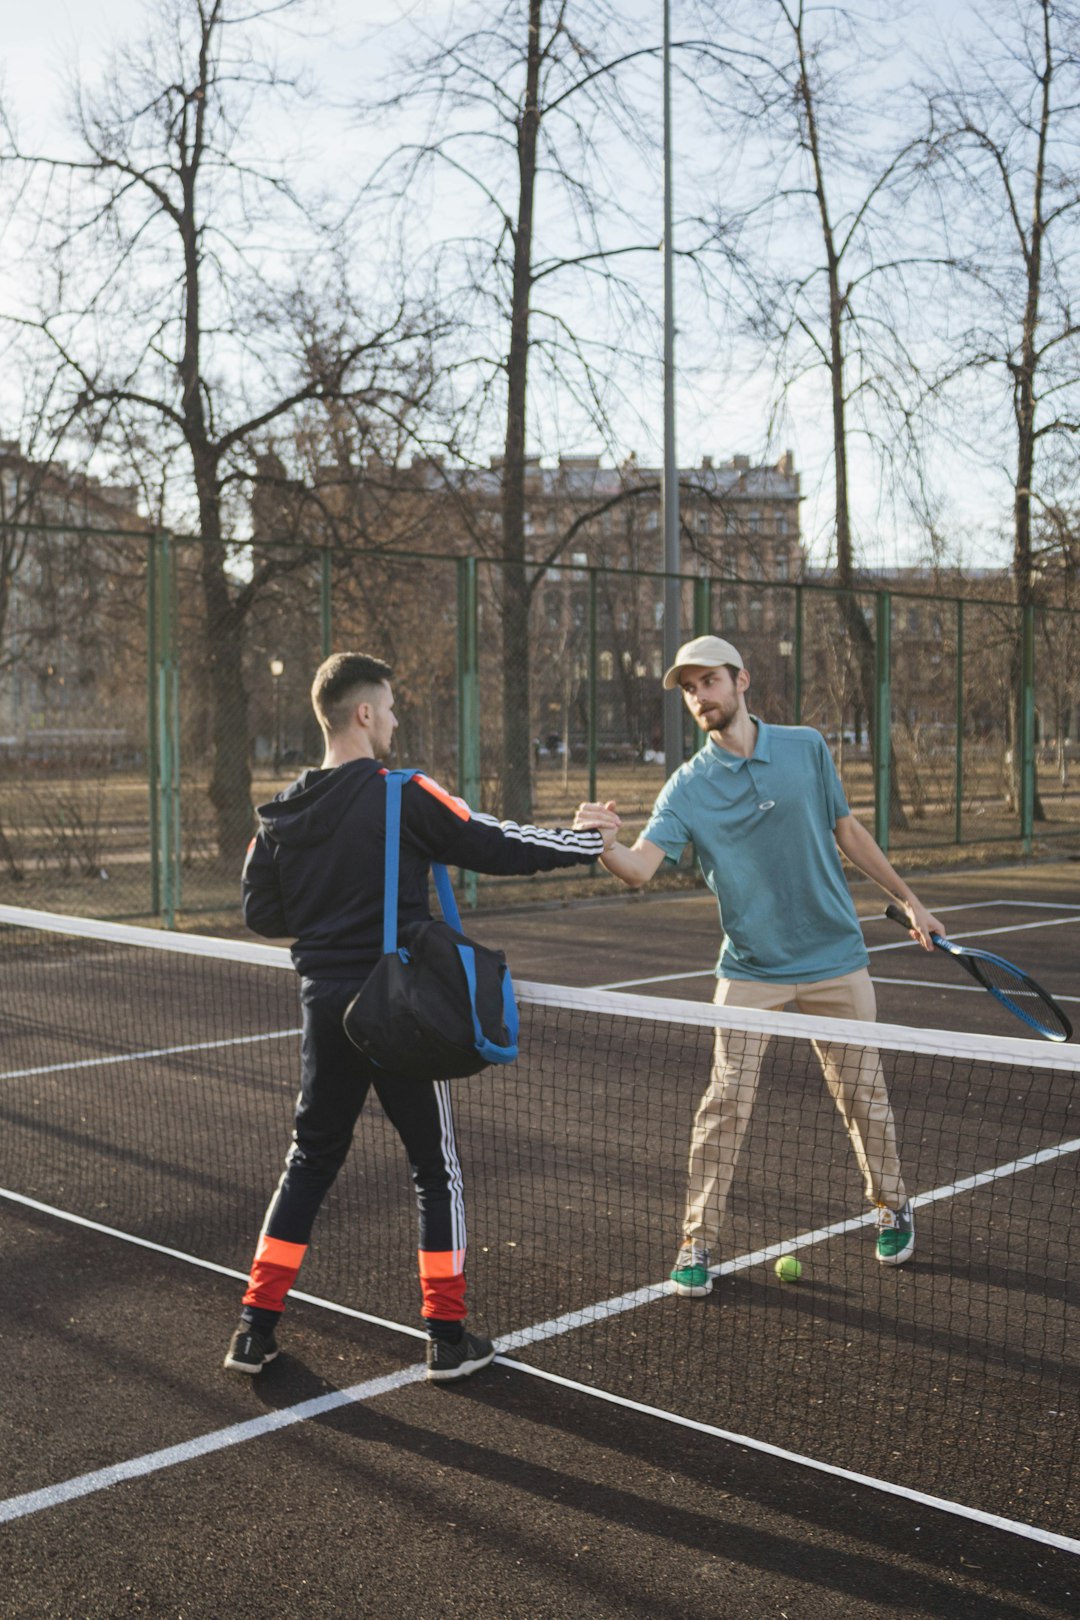 2 men playing tennis on court during daytime